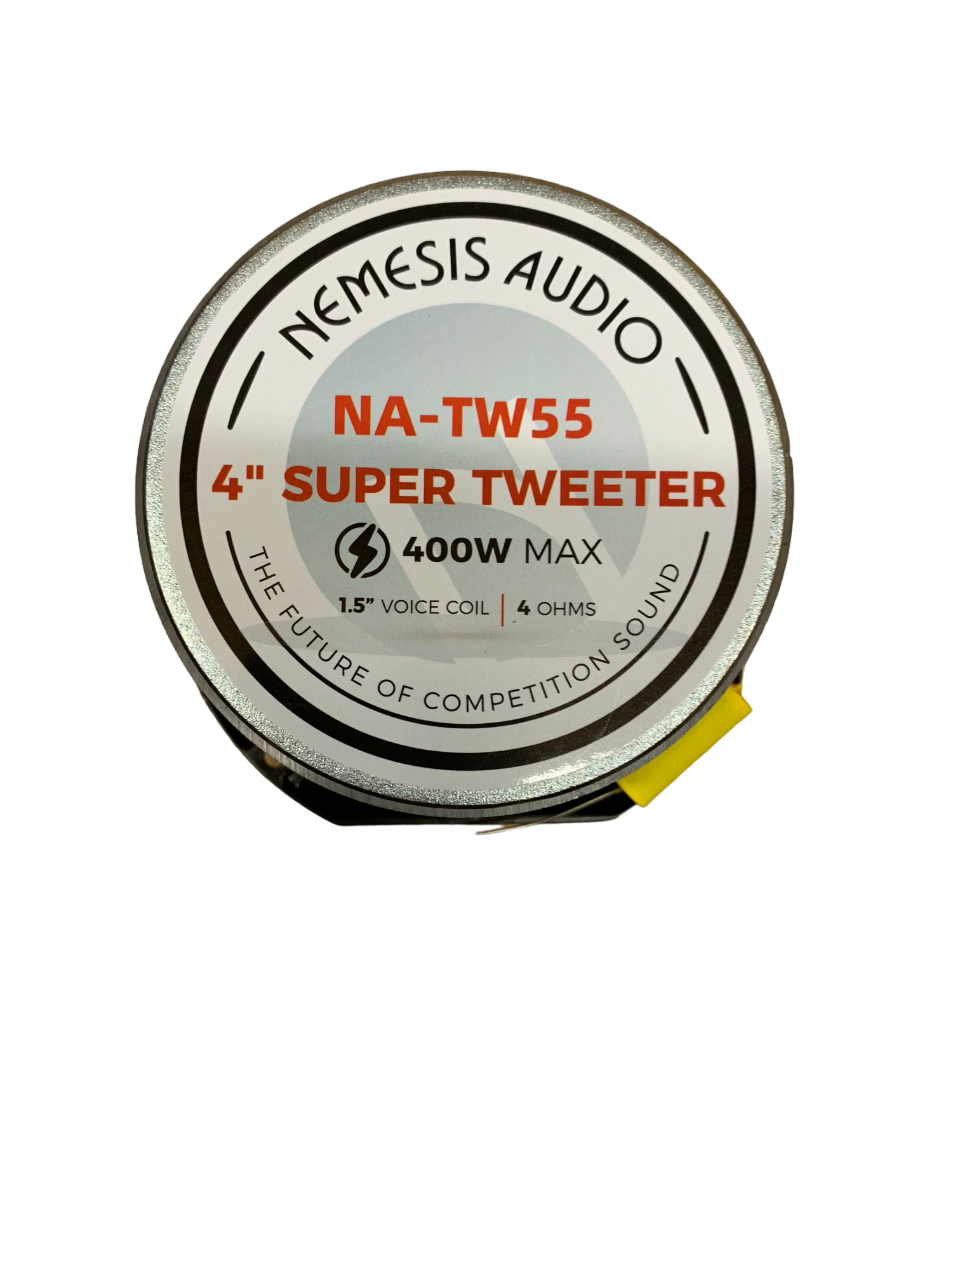 Nemesis Audio NA-TW55 4" Super Tweeter 200 Watts